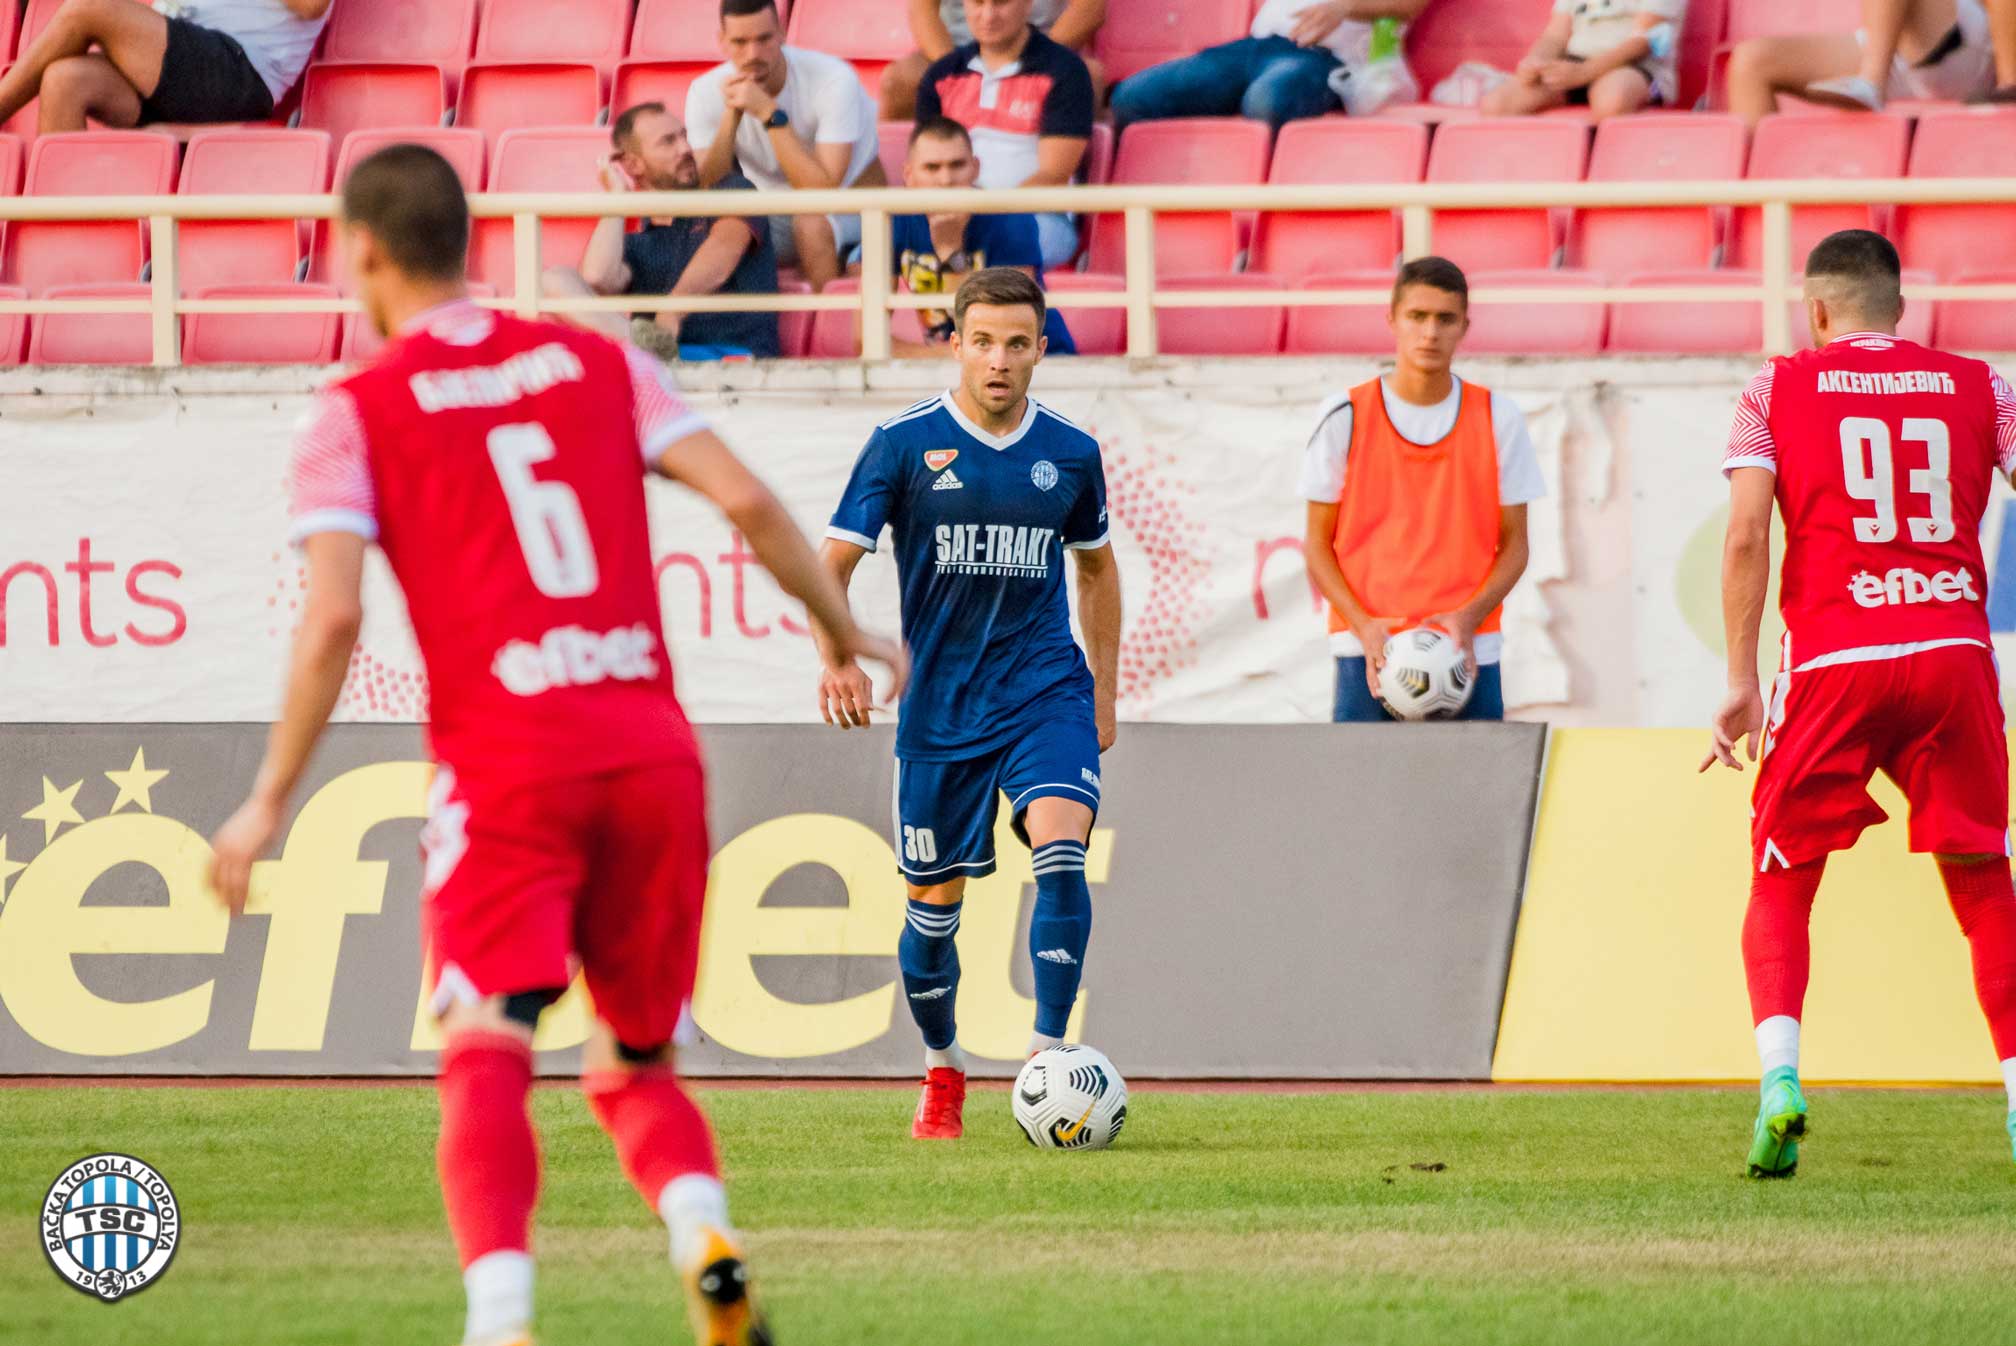 FK TSC - FK Radnički 1:1 (06.12.2021) Highlights 